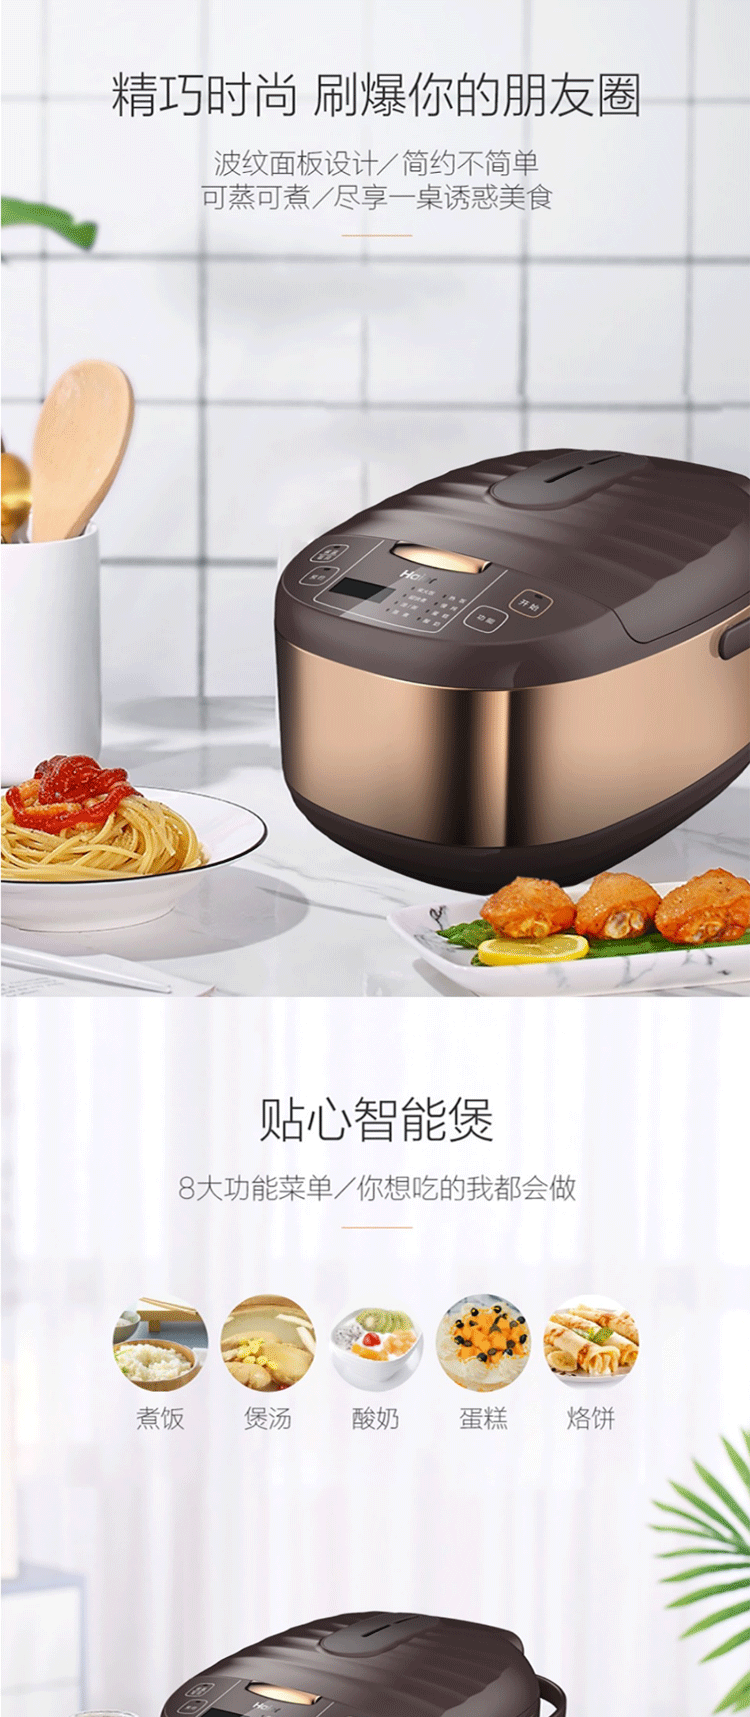 海尔/Haier 海尔/Haier 电饭煲电饭锅3L大容量智能预约家用智能多功能煮饭锅